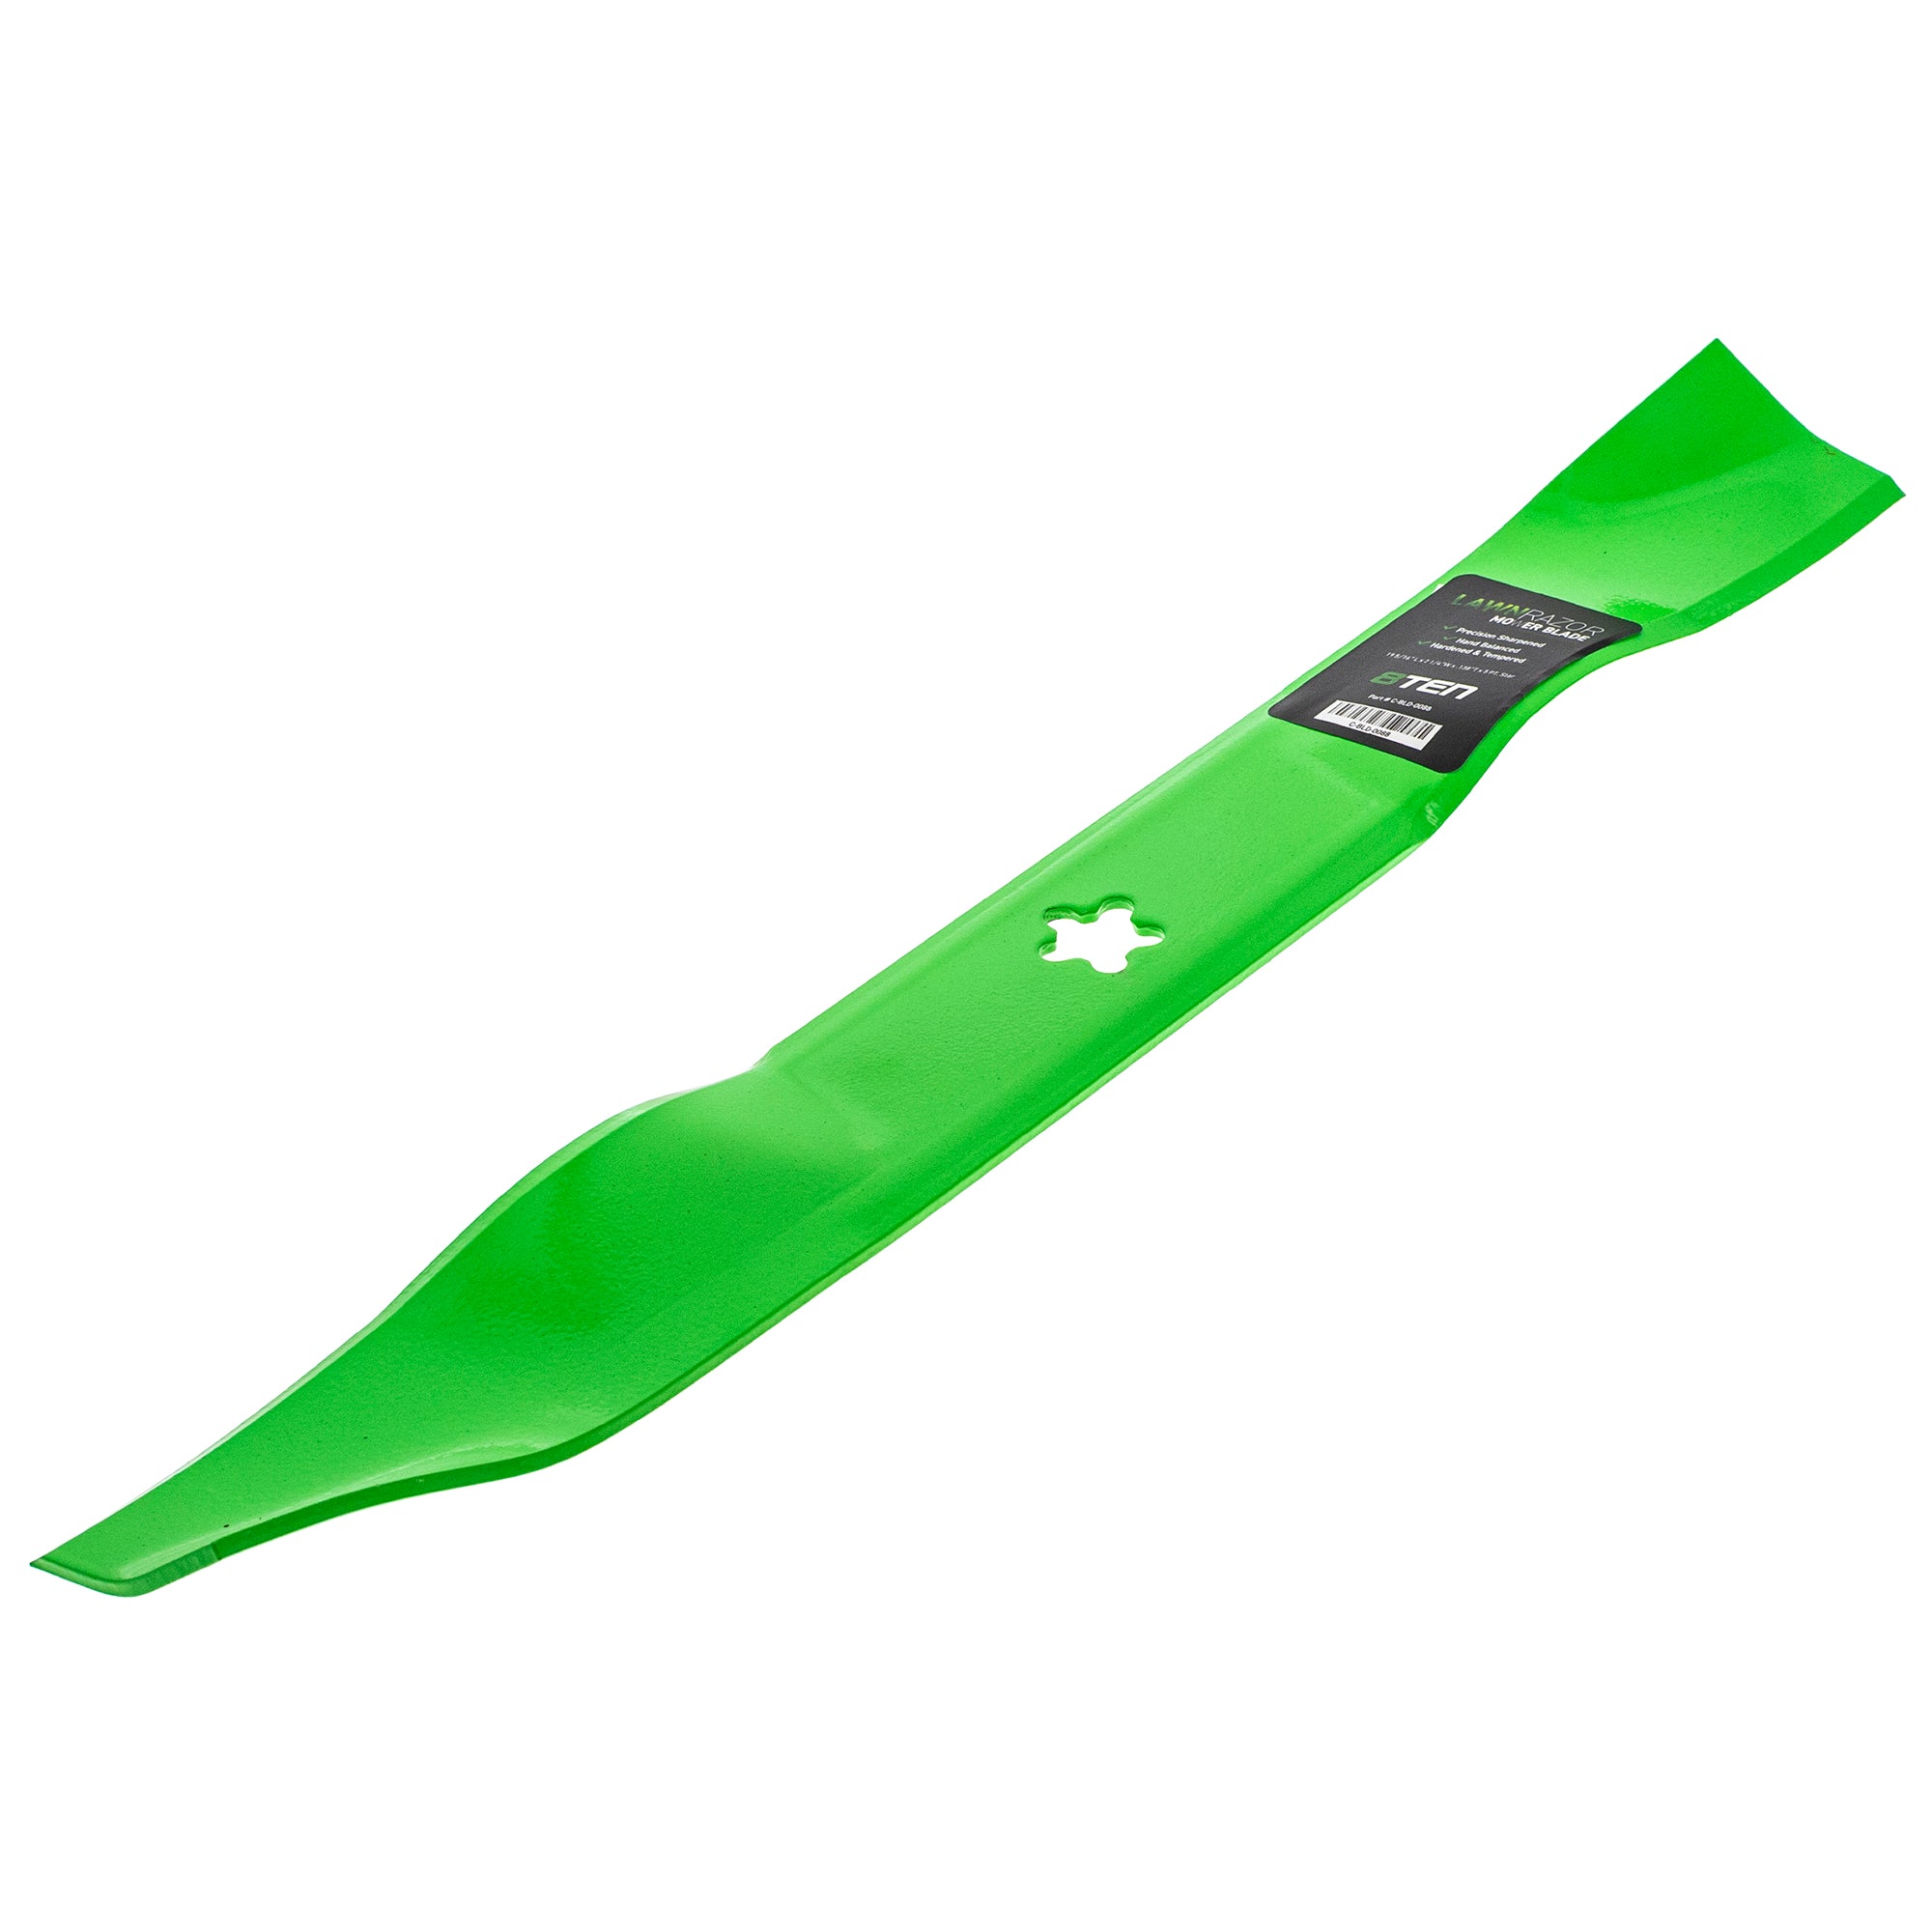 Deck Blade Spindle Kit for Husqvarna LT131 LT141 LT154 LT1597 LTH 1538